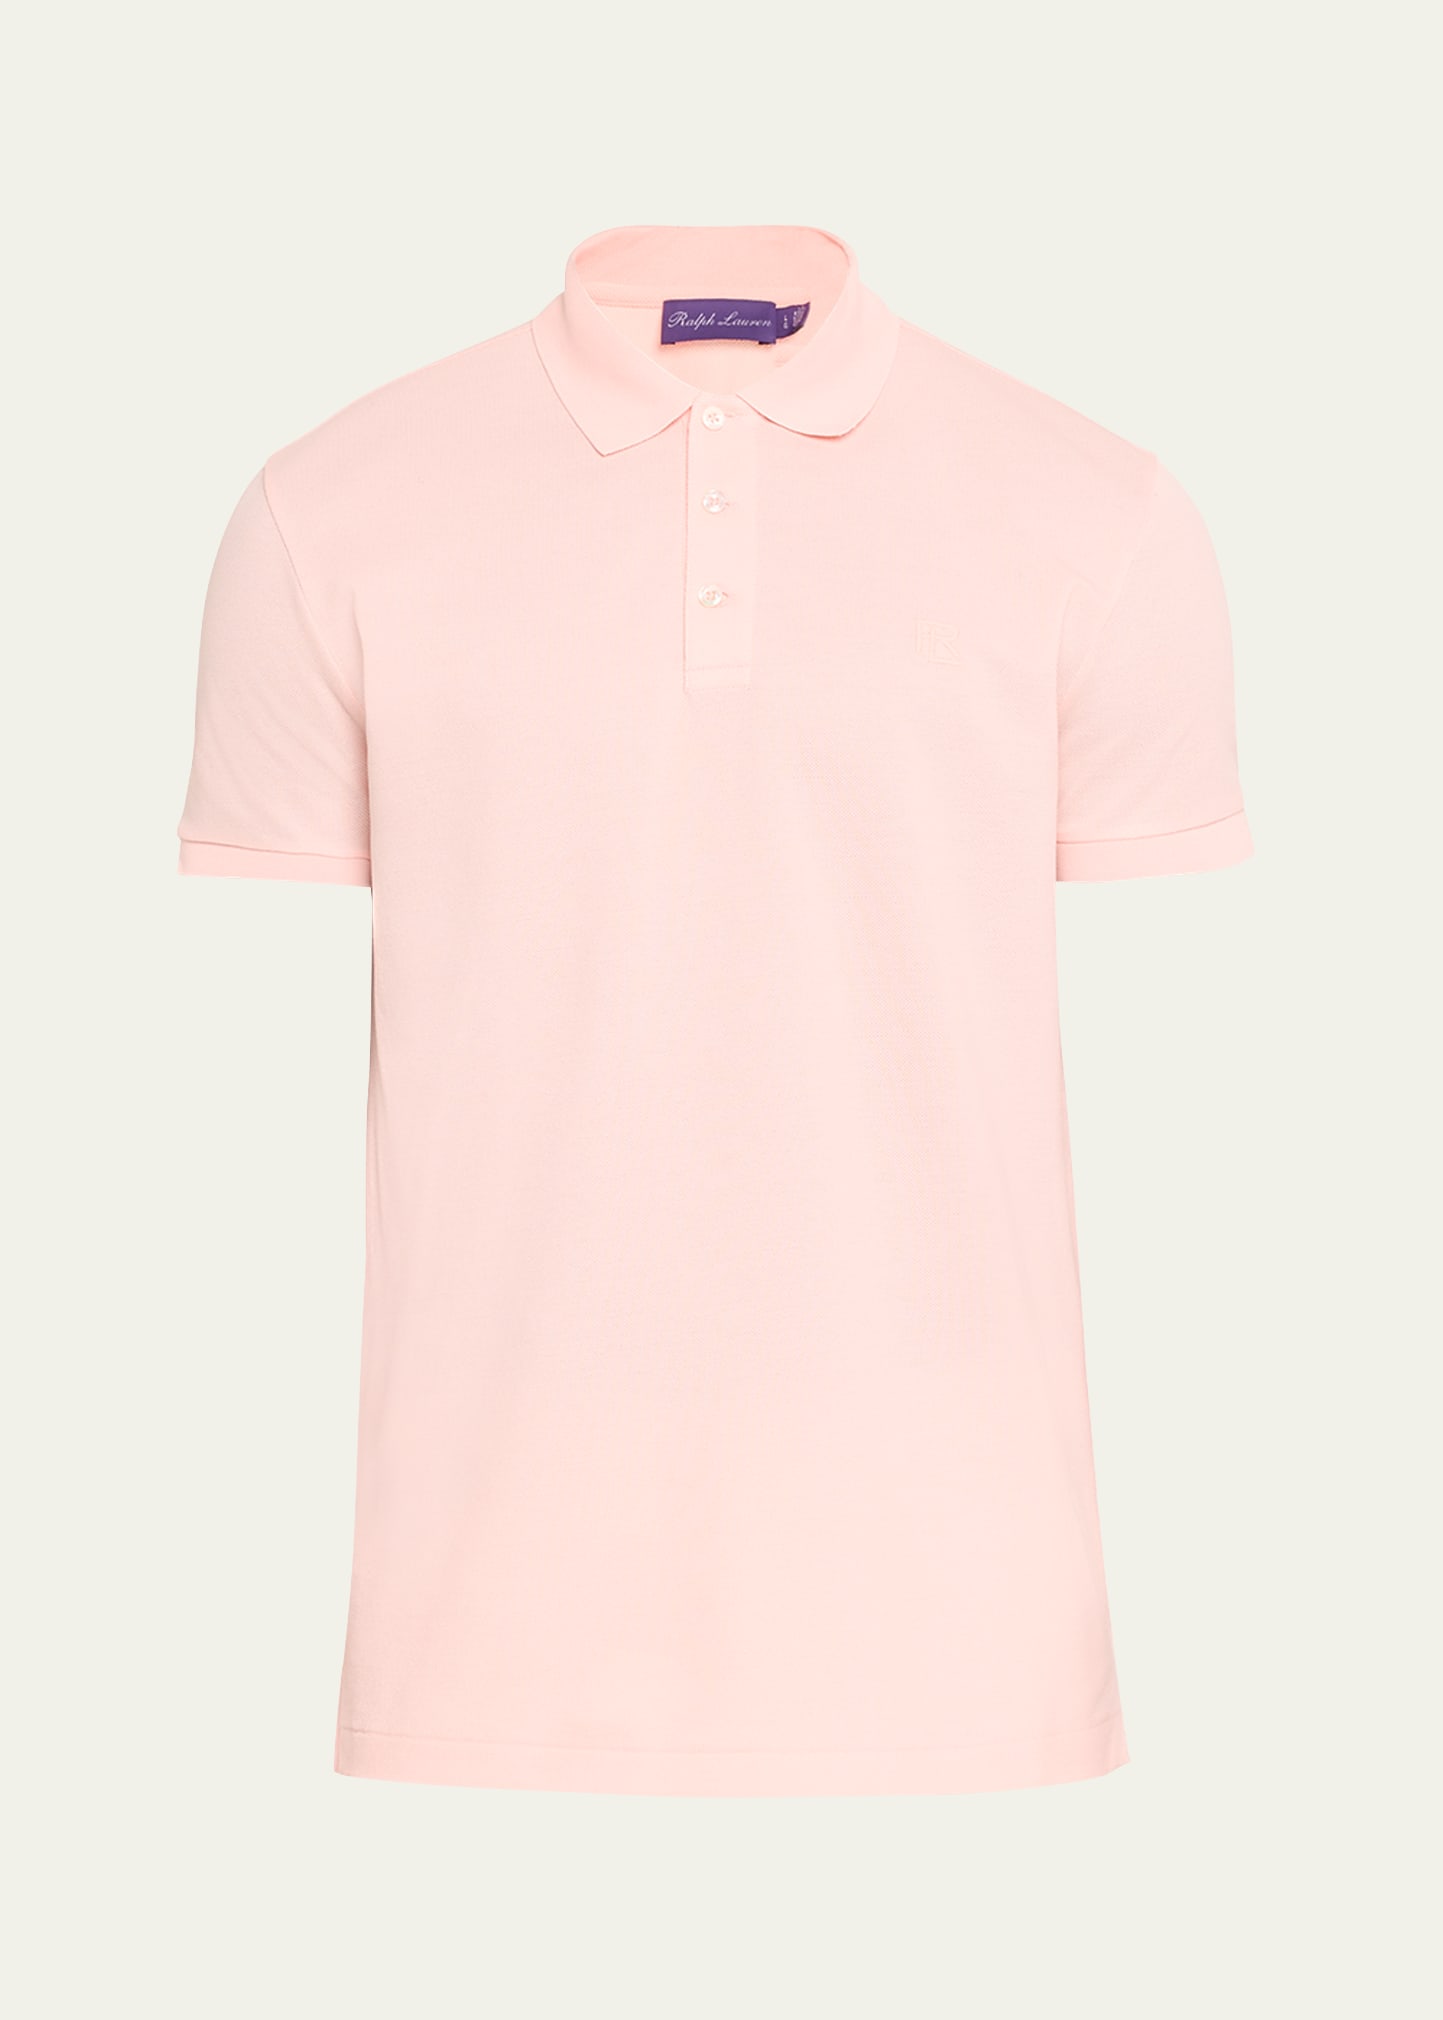 Ralph Lauren Men's Solid Pique Polo Shirt In Crstl Rose